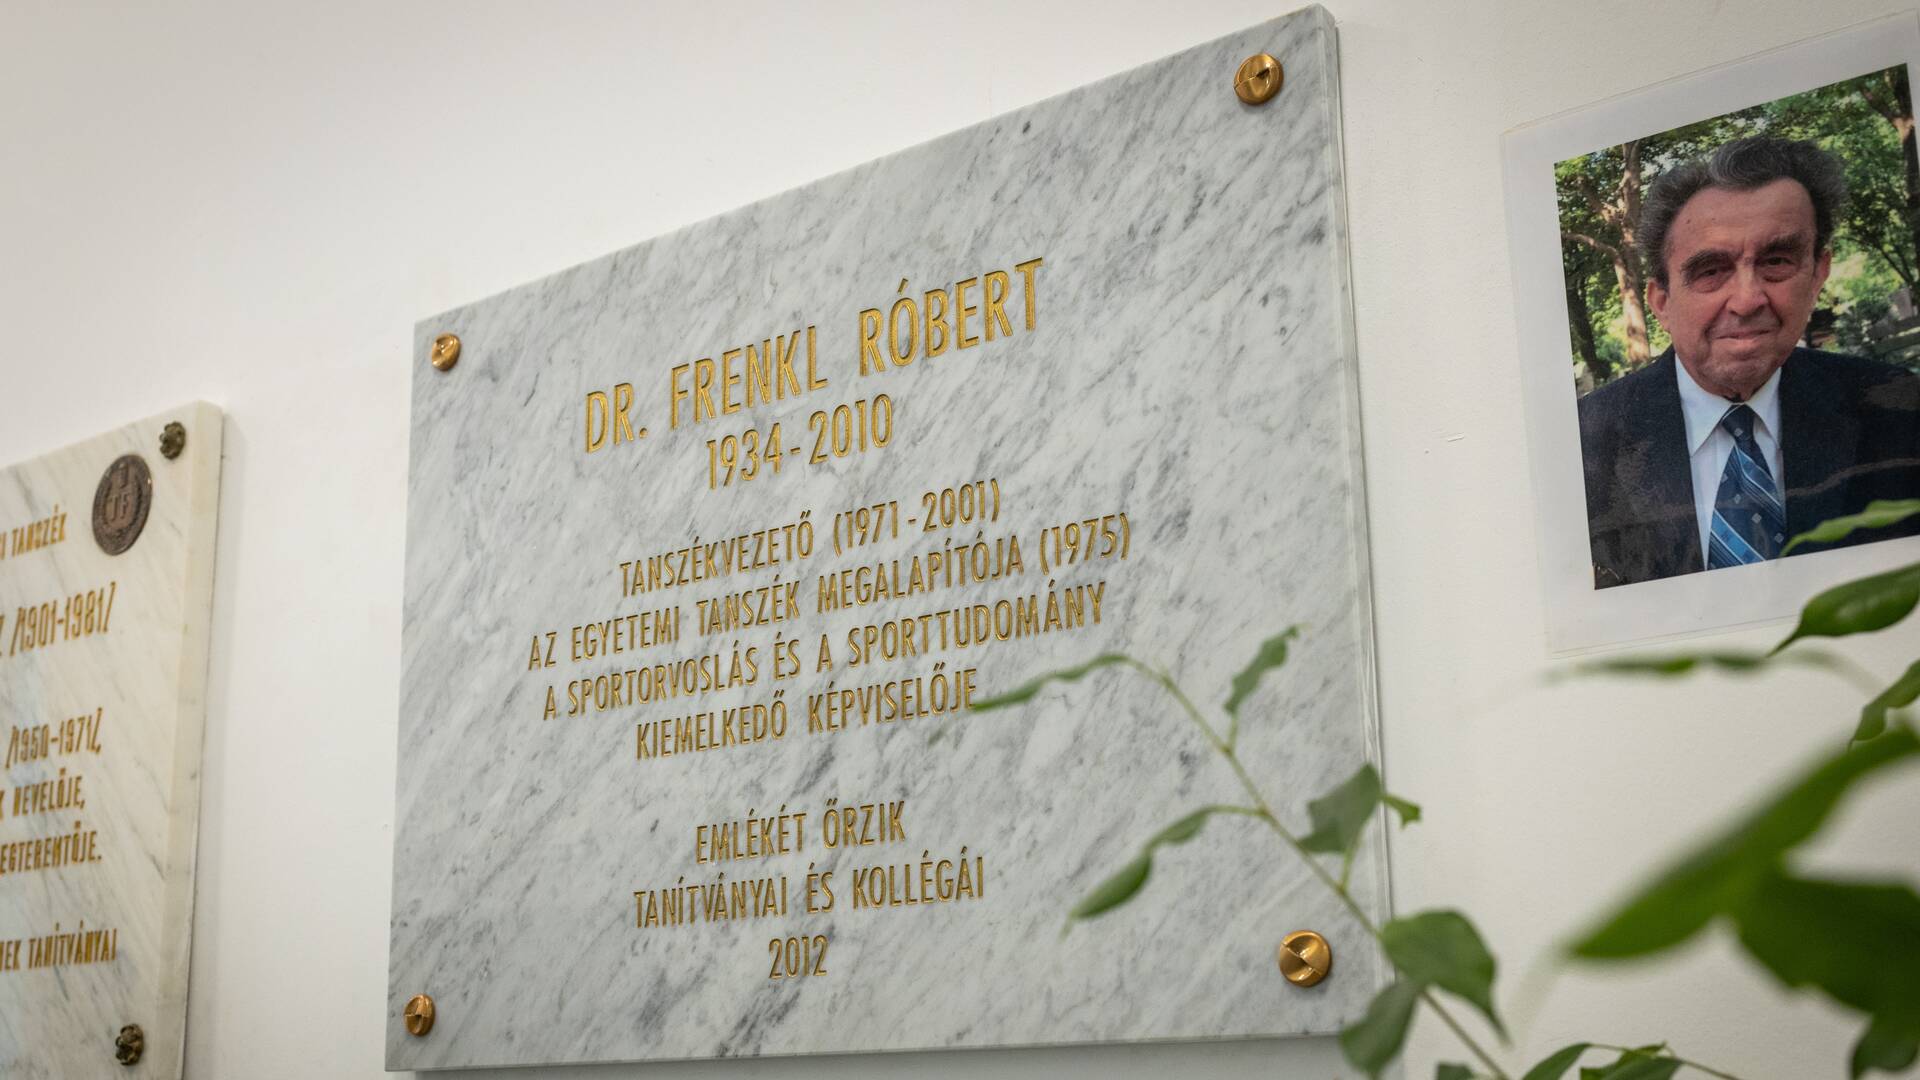 Commemoration held for Róbert Frenkl